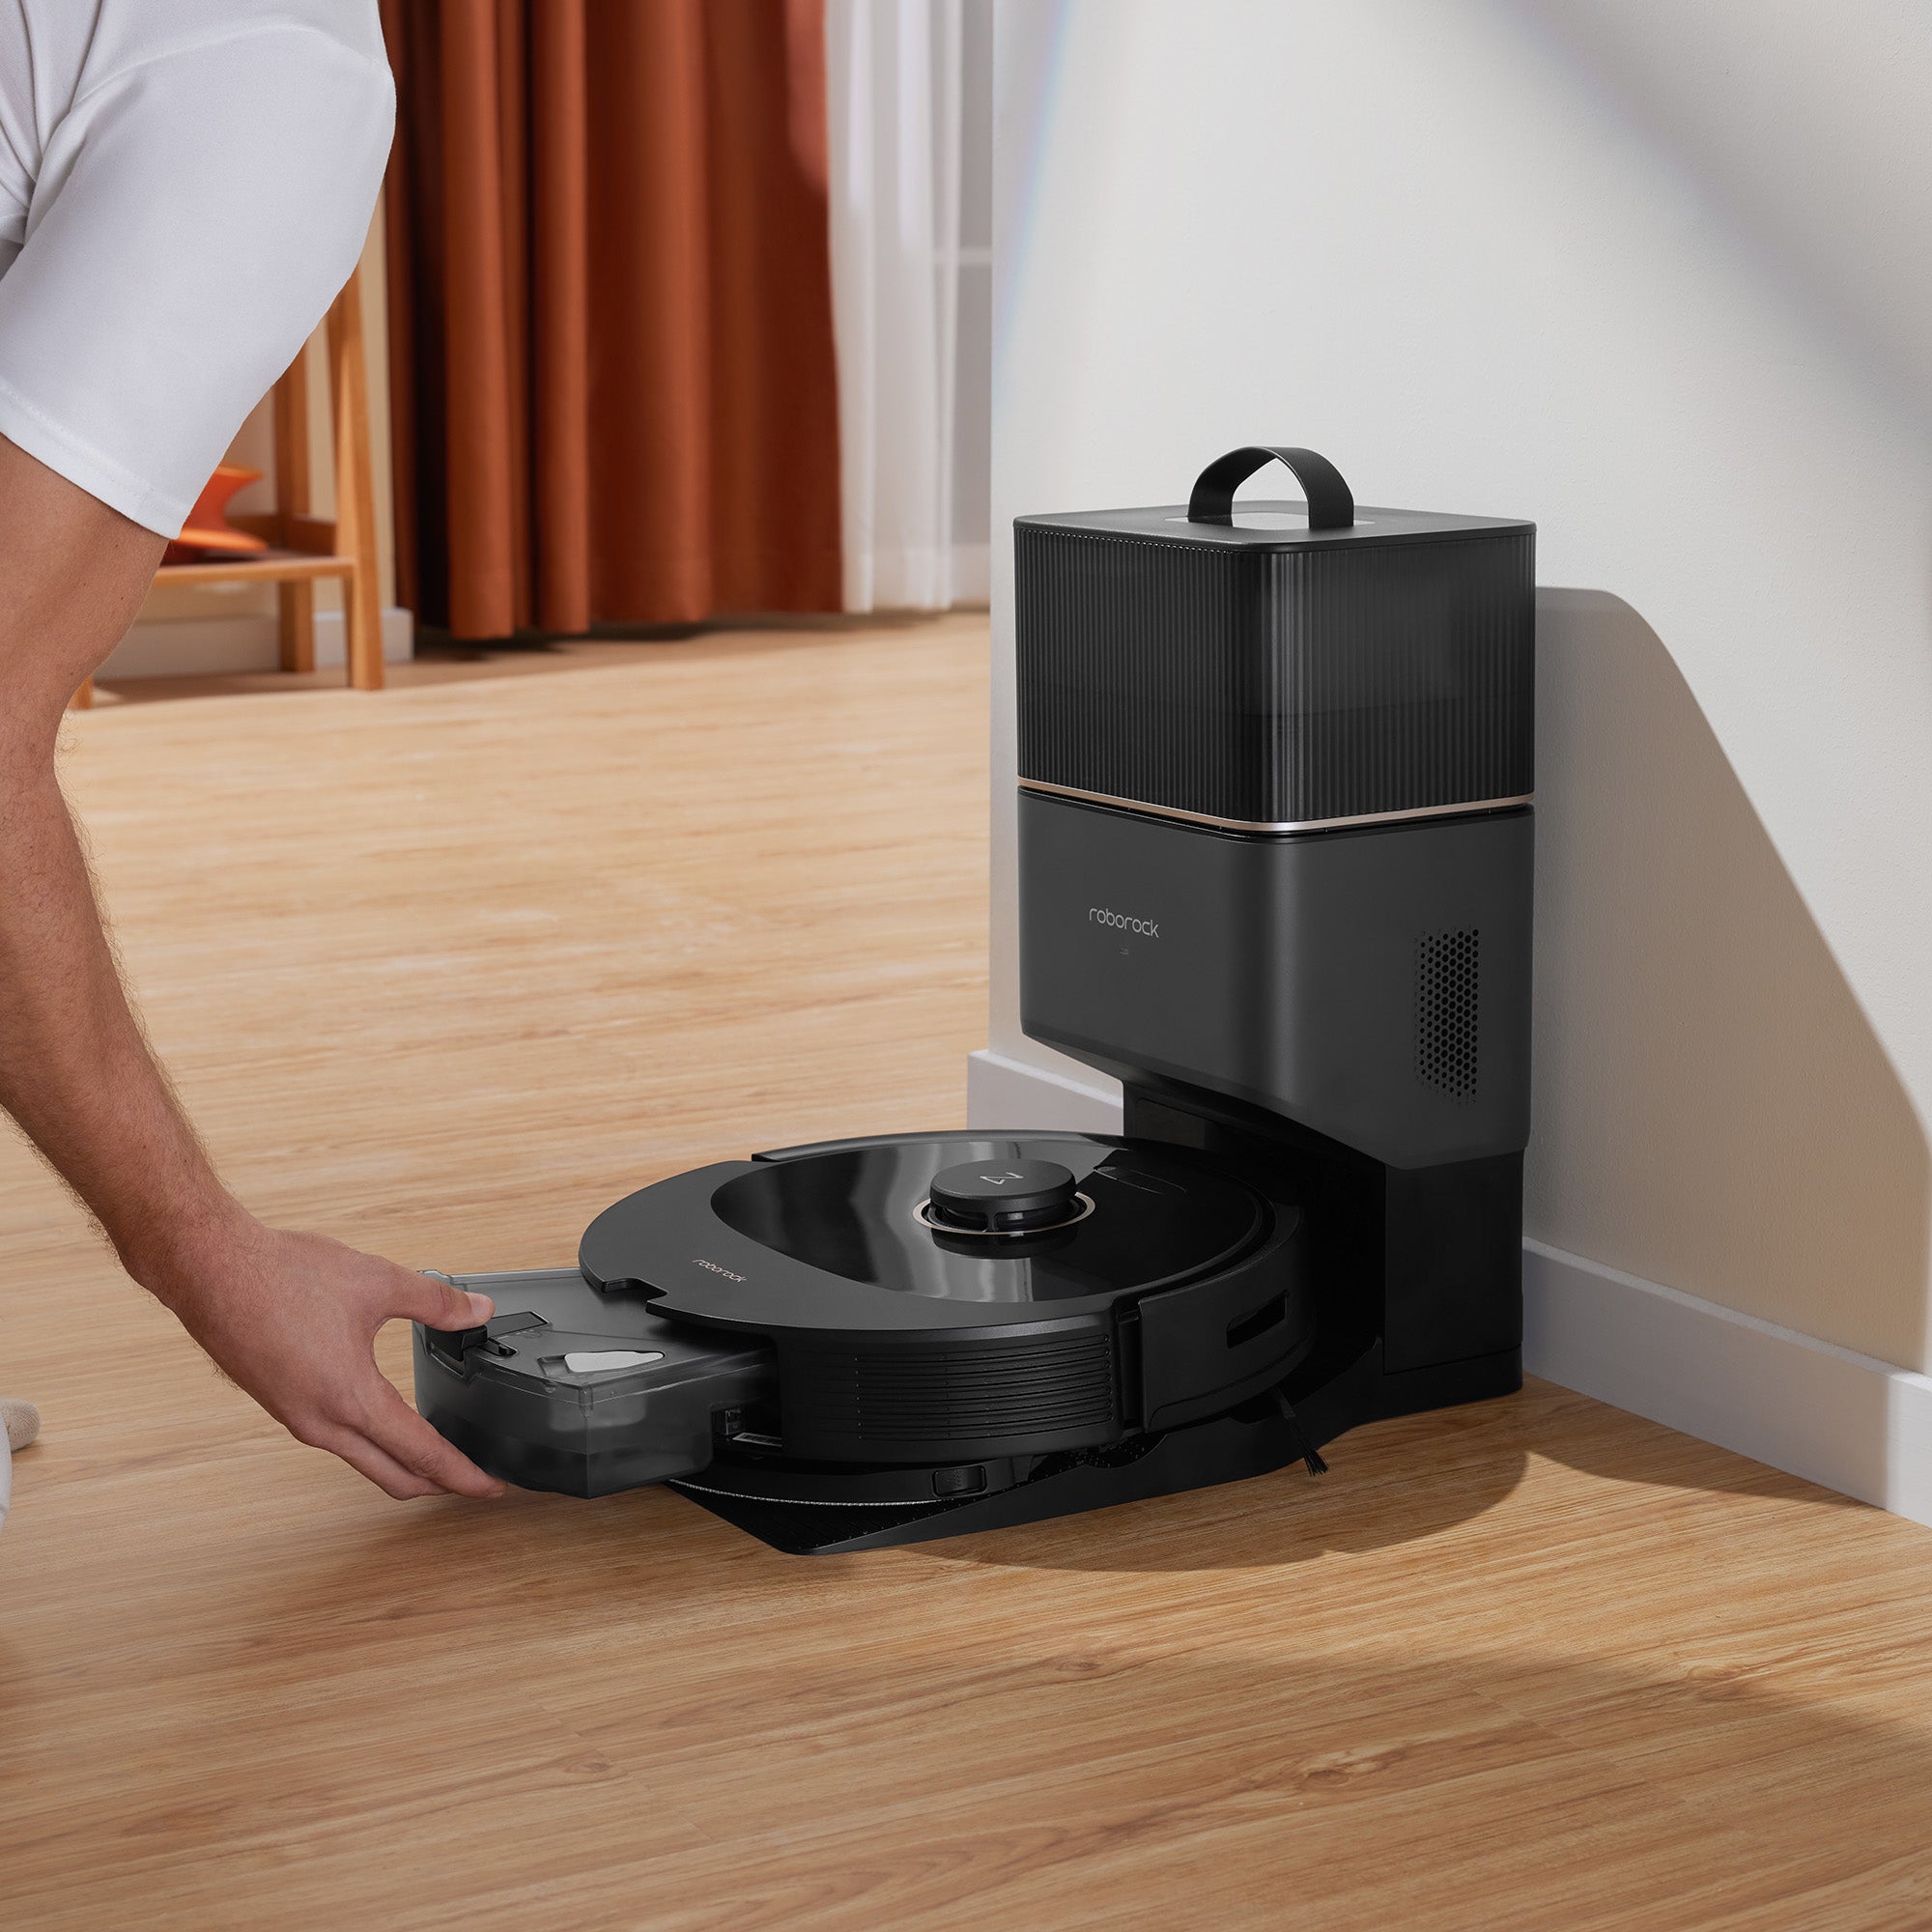 Buy Roborock Q8 Max Plus Robot Vacuum at Best Price